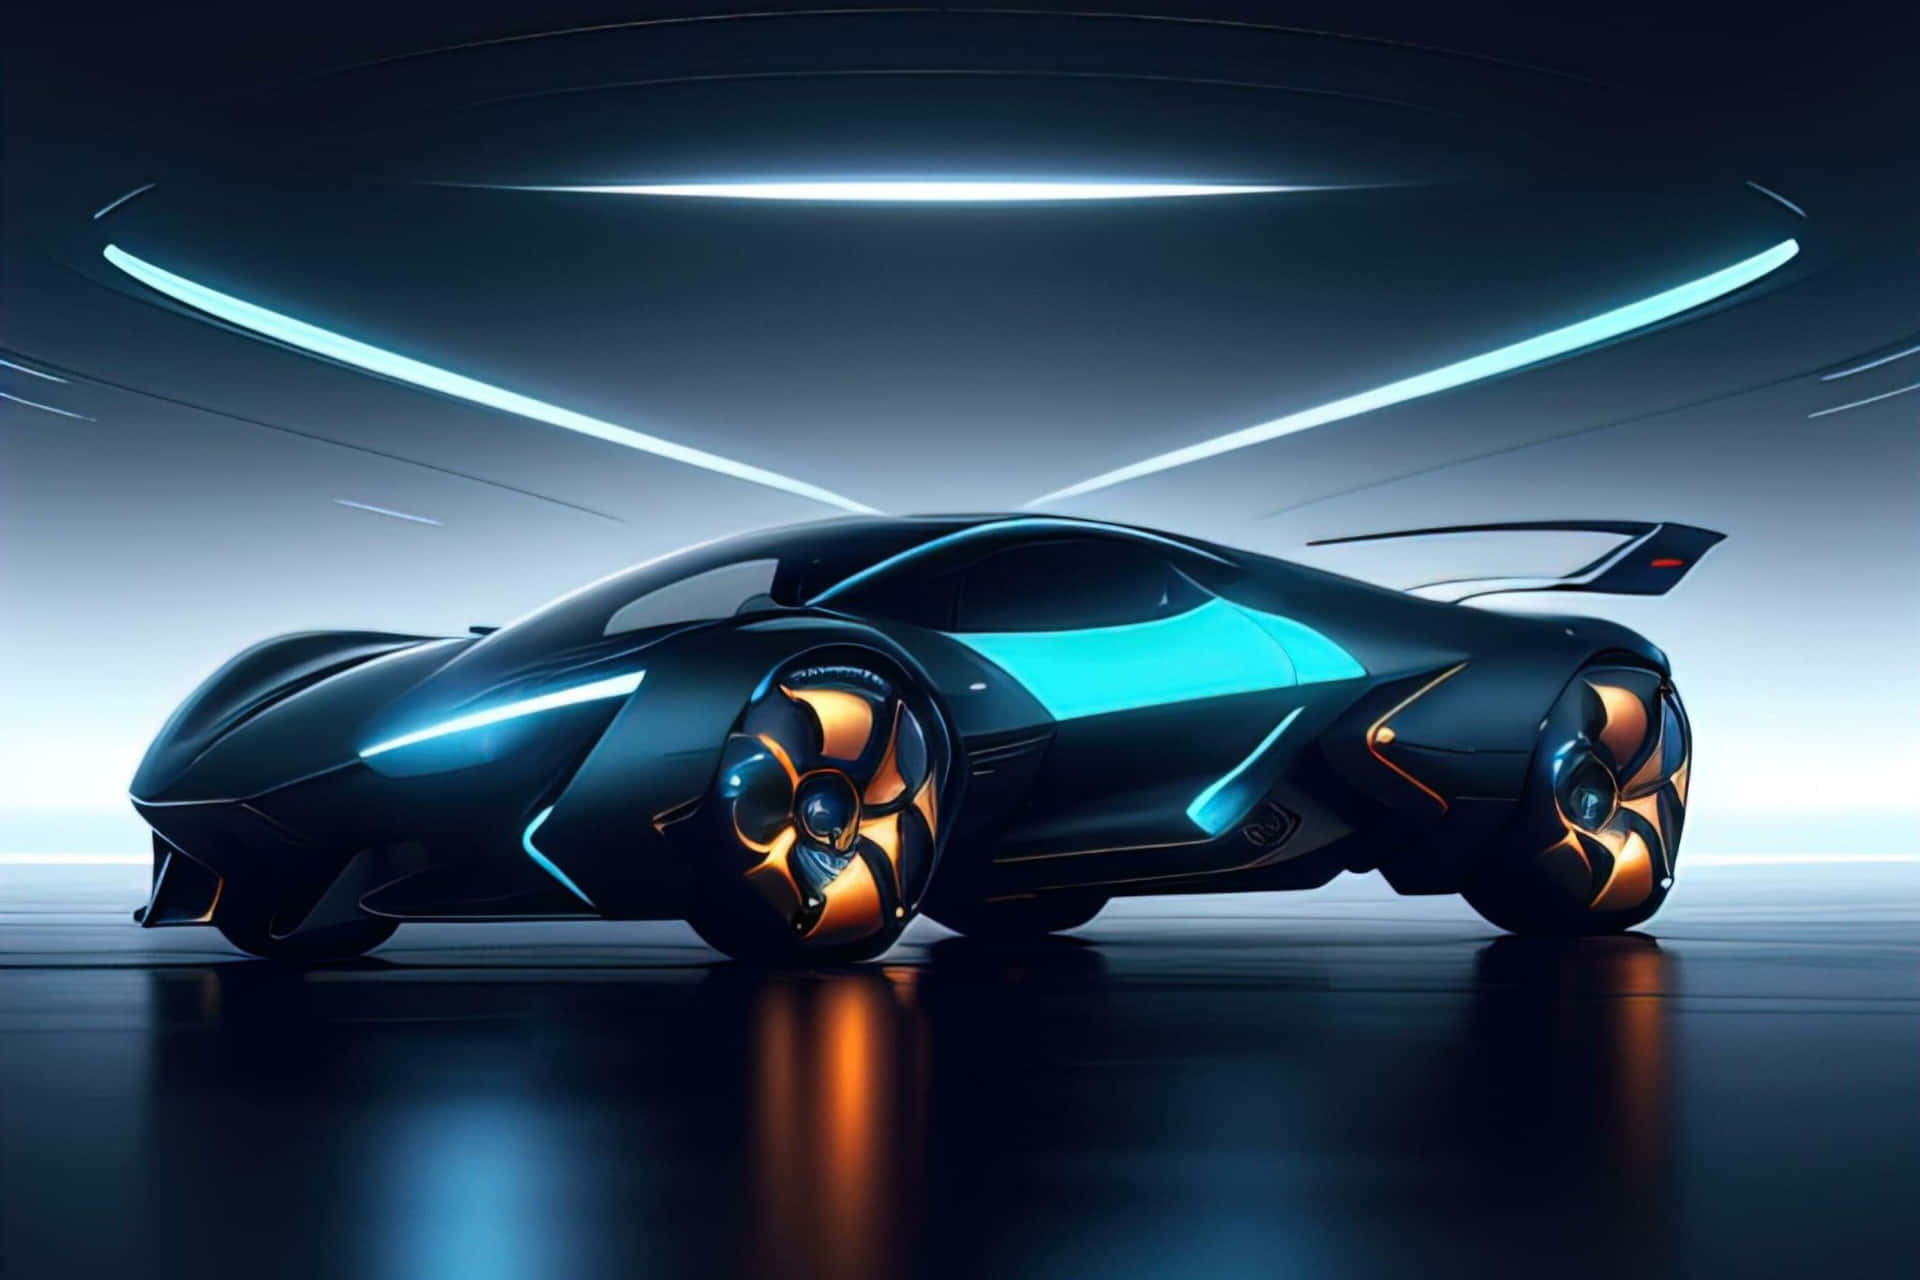 Neon Blue Lamborghini Futuristic Design.jpg Wallpaper